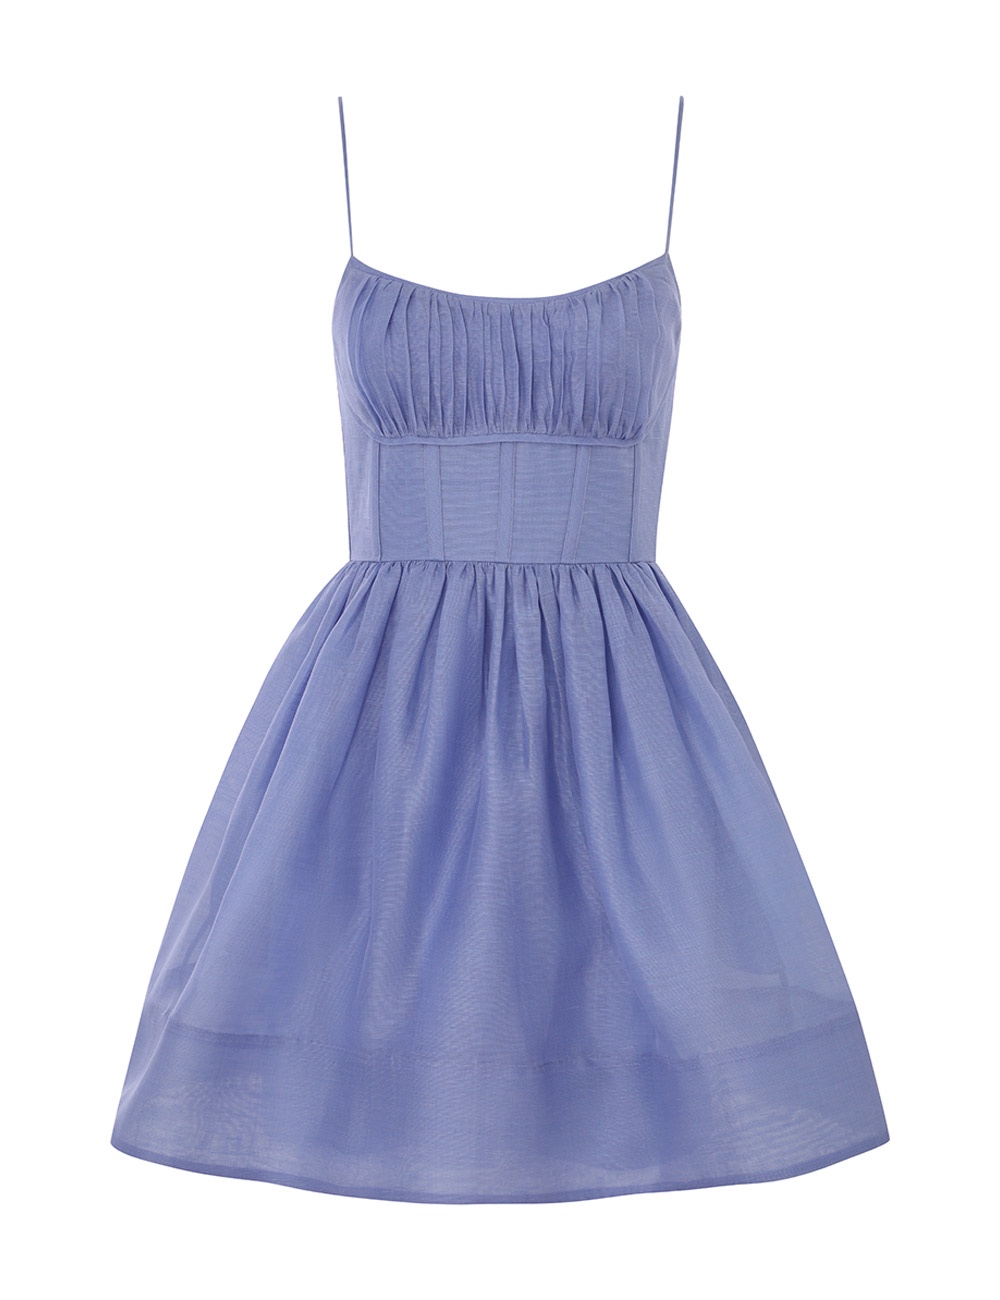 （爆款大量现货发售）#B1049-1 澳洲 ZIMMERMANN 春夏时尚甜美吊带收腰连衣裙颜色：蓝色码数：0/S 1/M 2/L 3/XL